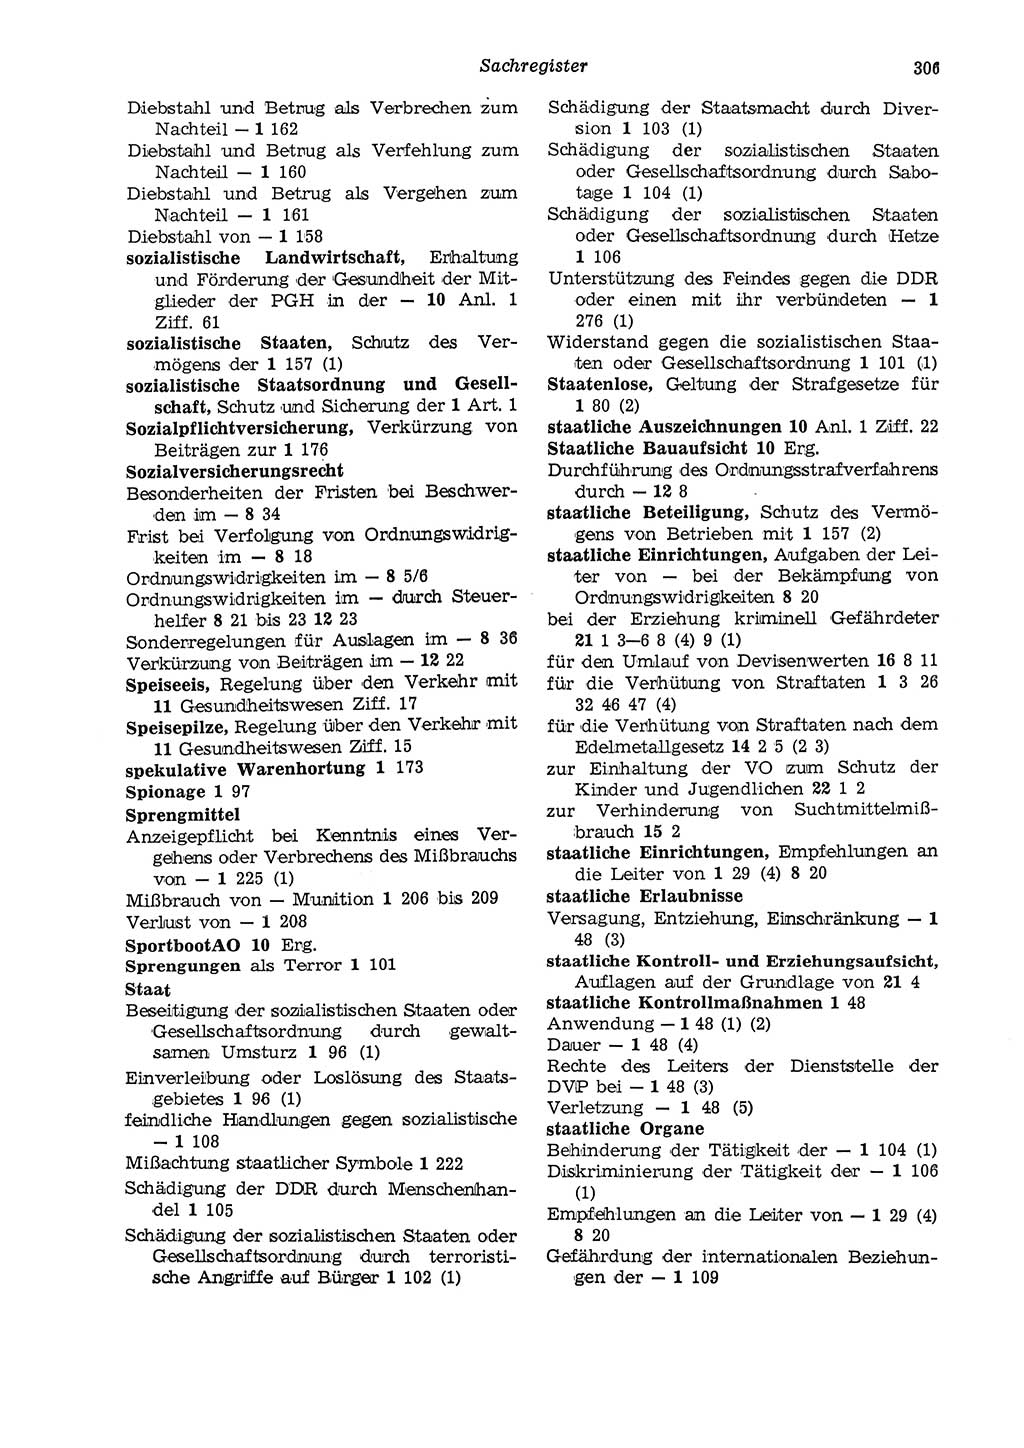 Strafgesetzbuch (StGB) der Deutschen Demokratischen Republik (DDR) und angrenzende Gesetze und Bestimmungen 1975, Seite 306 (StGB DDR Ges. Best. 1975, S. 306)